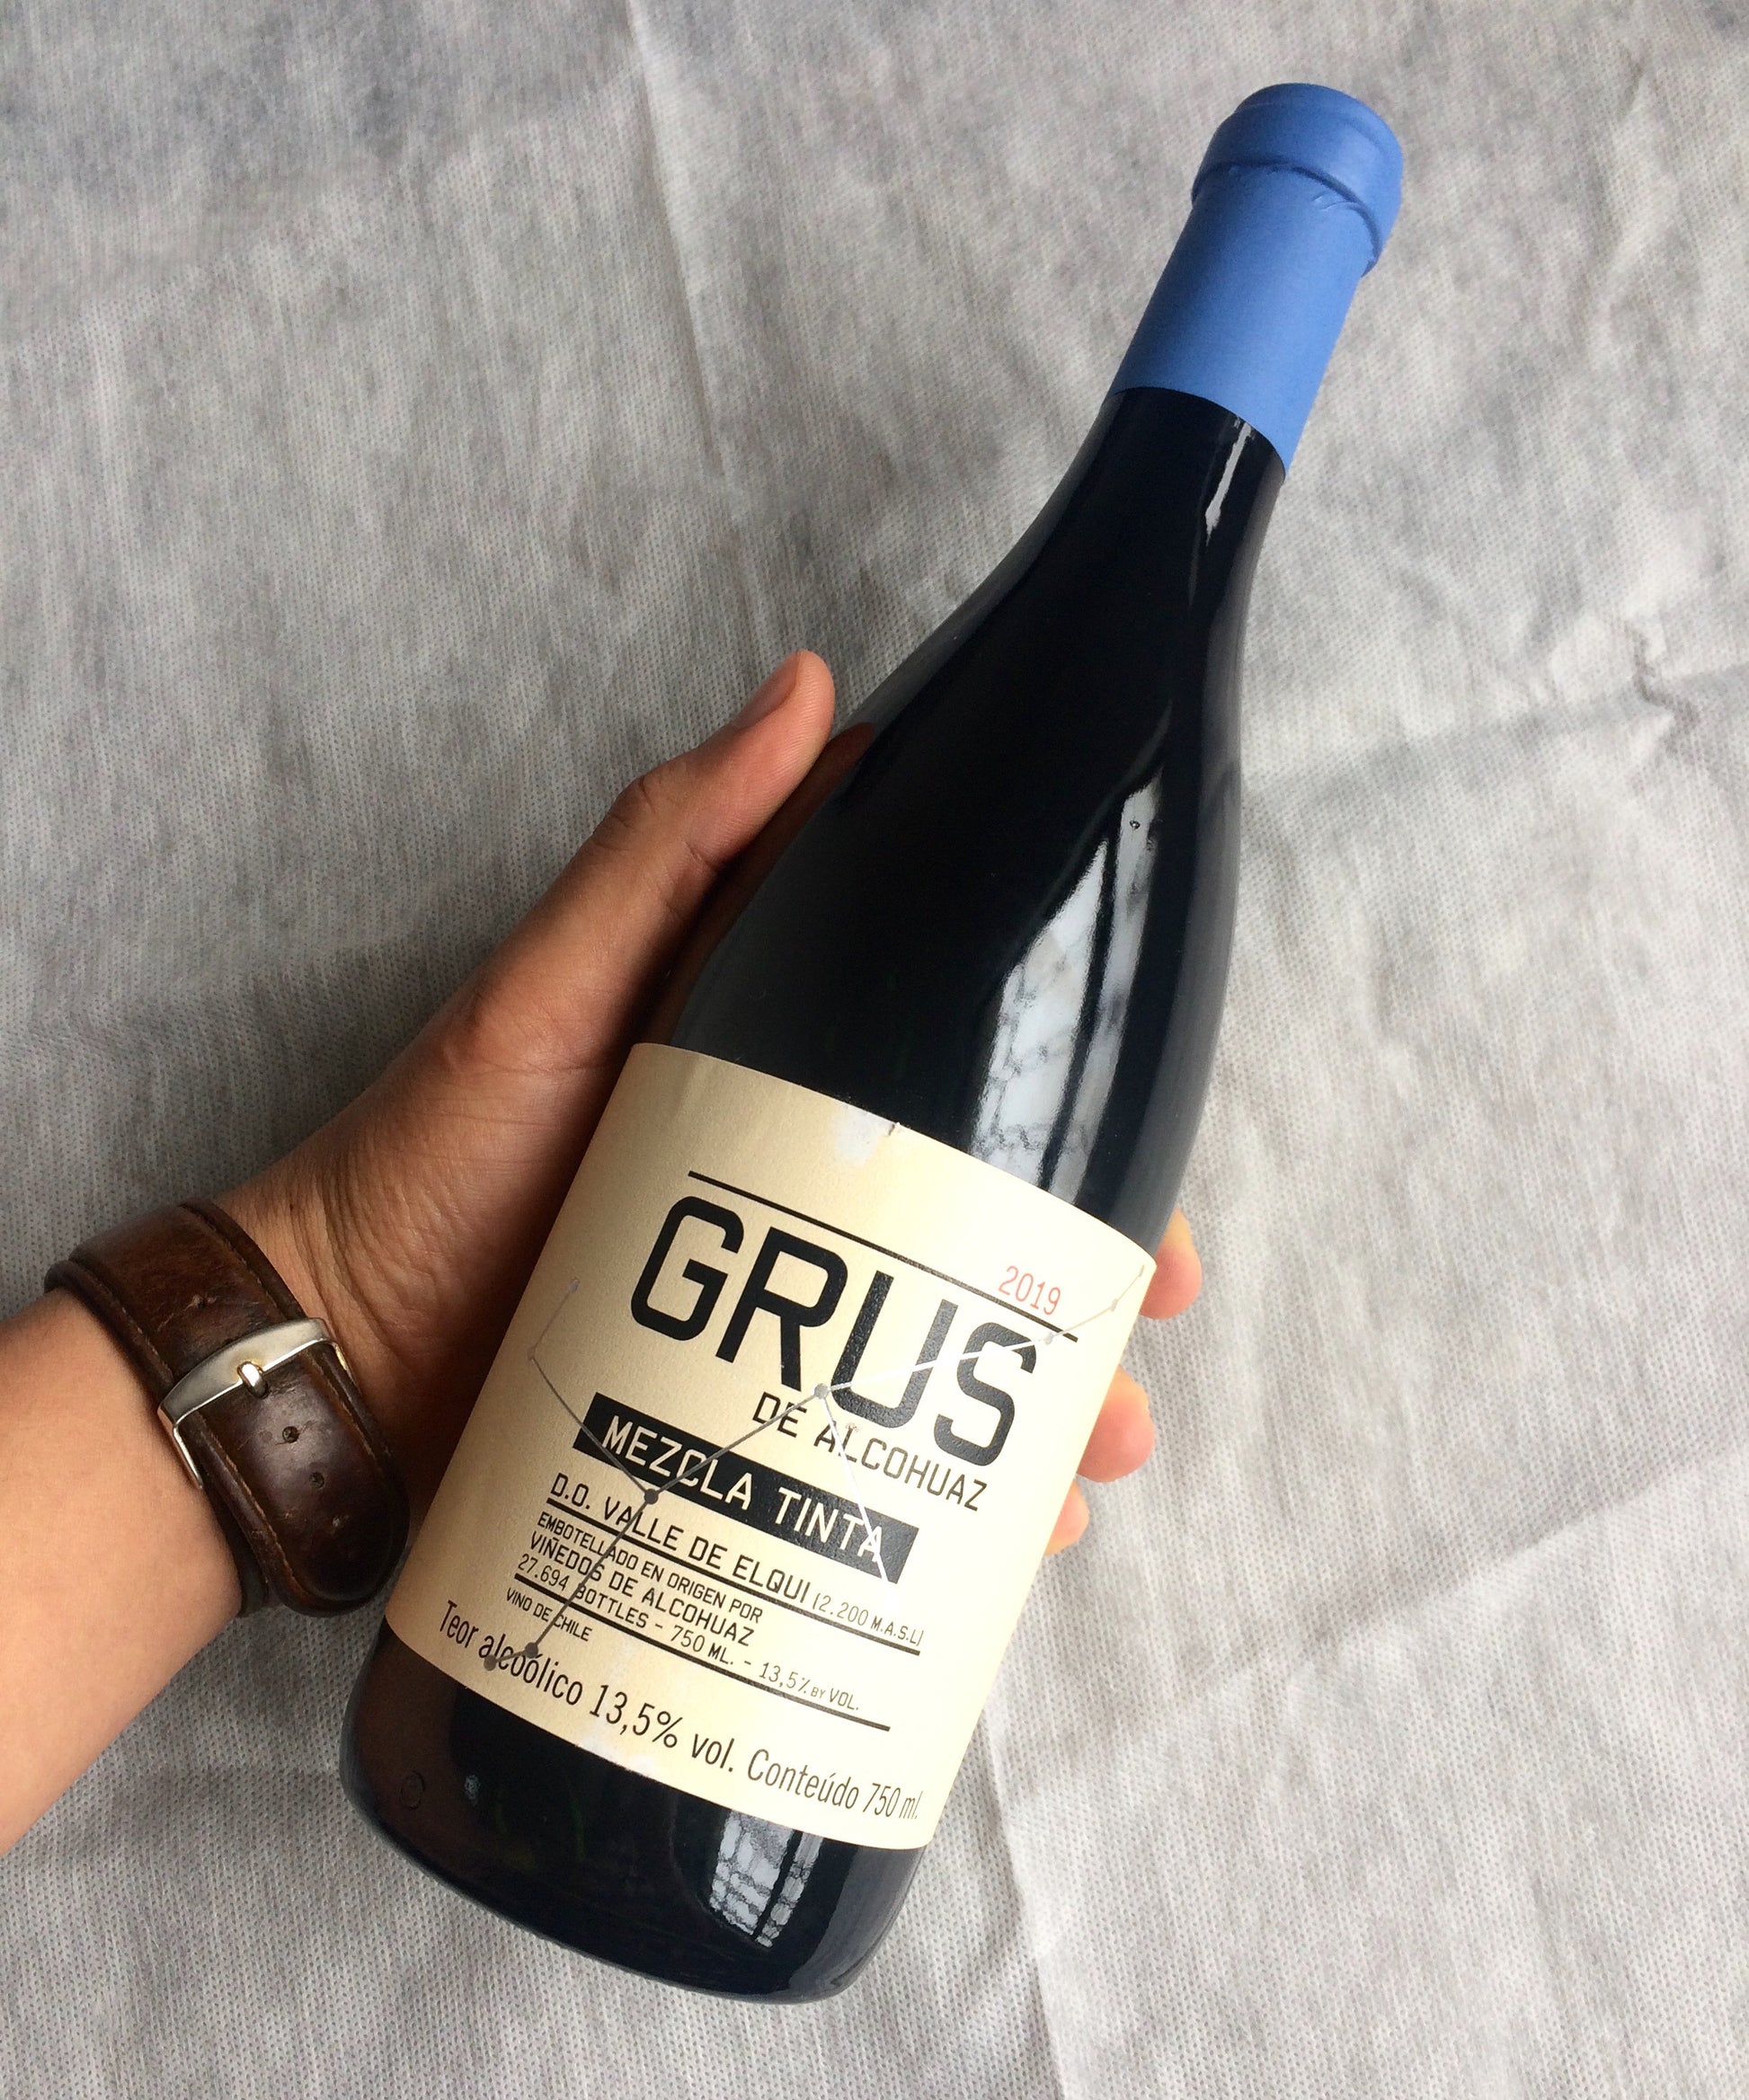 Vinho Viñedos de Alcohuaz Grus